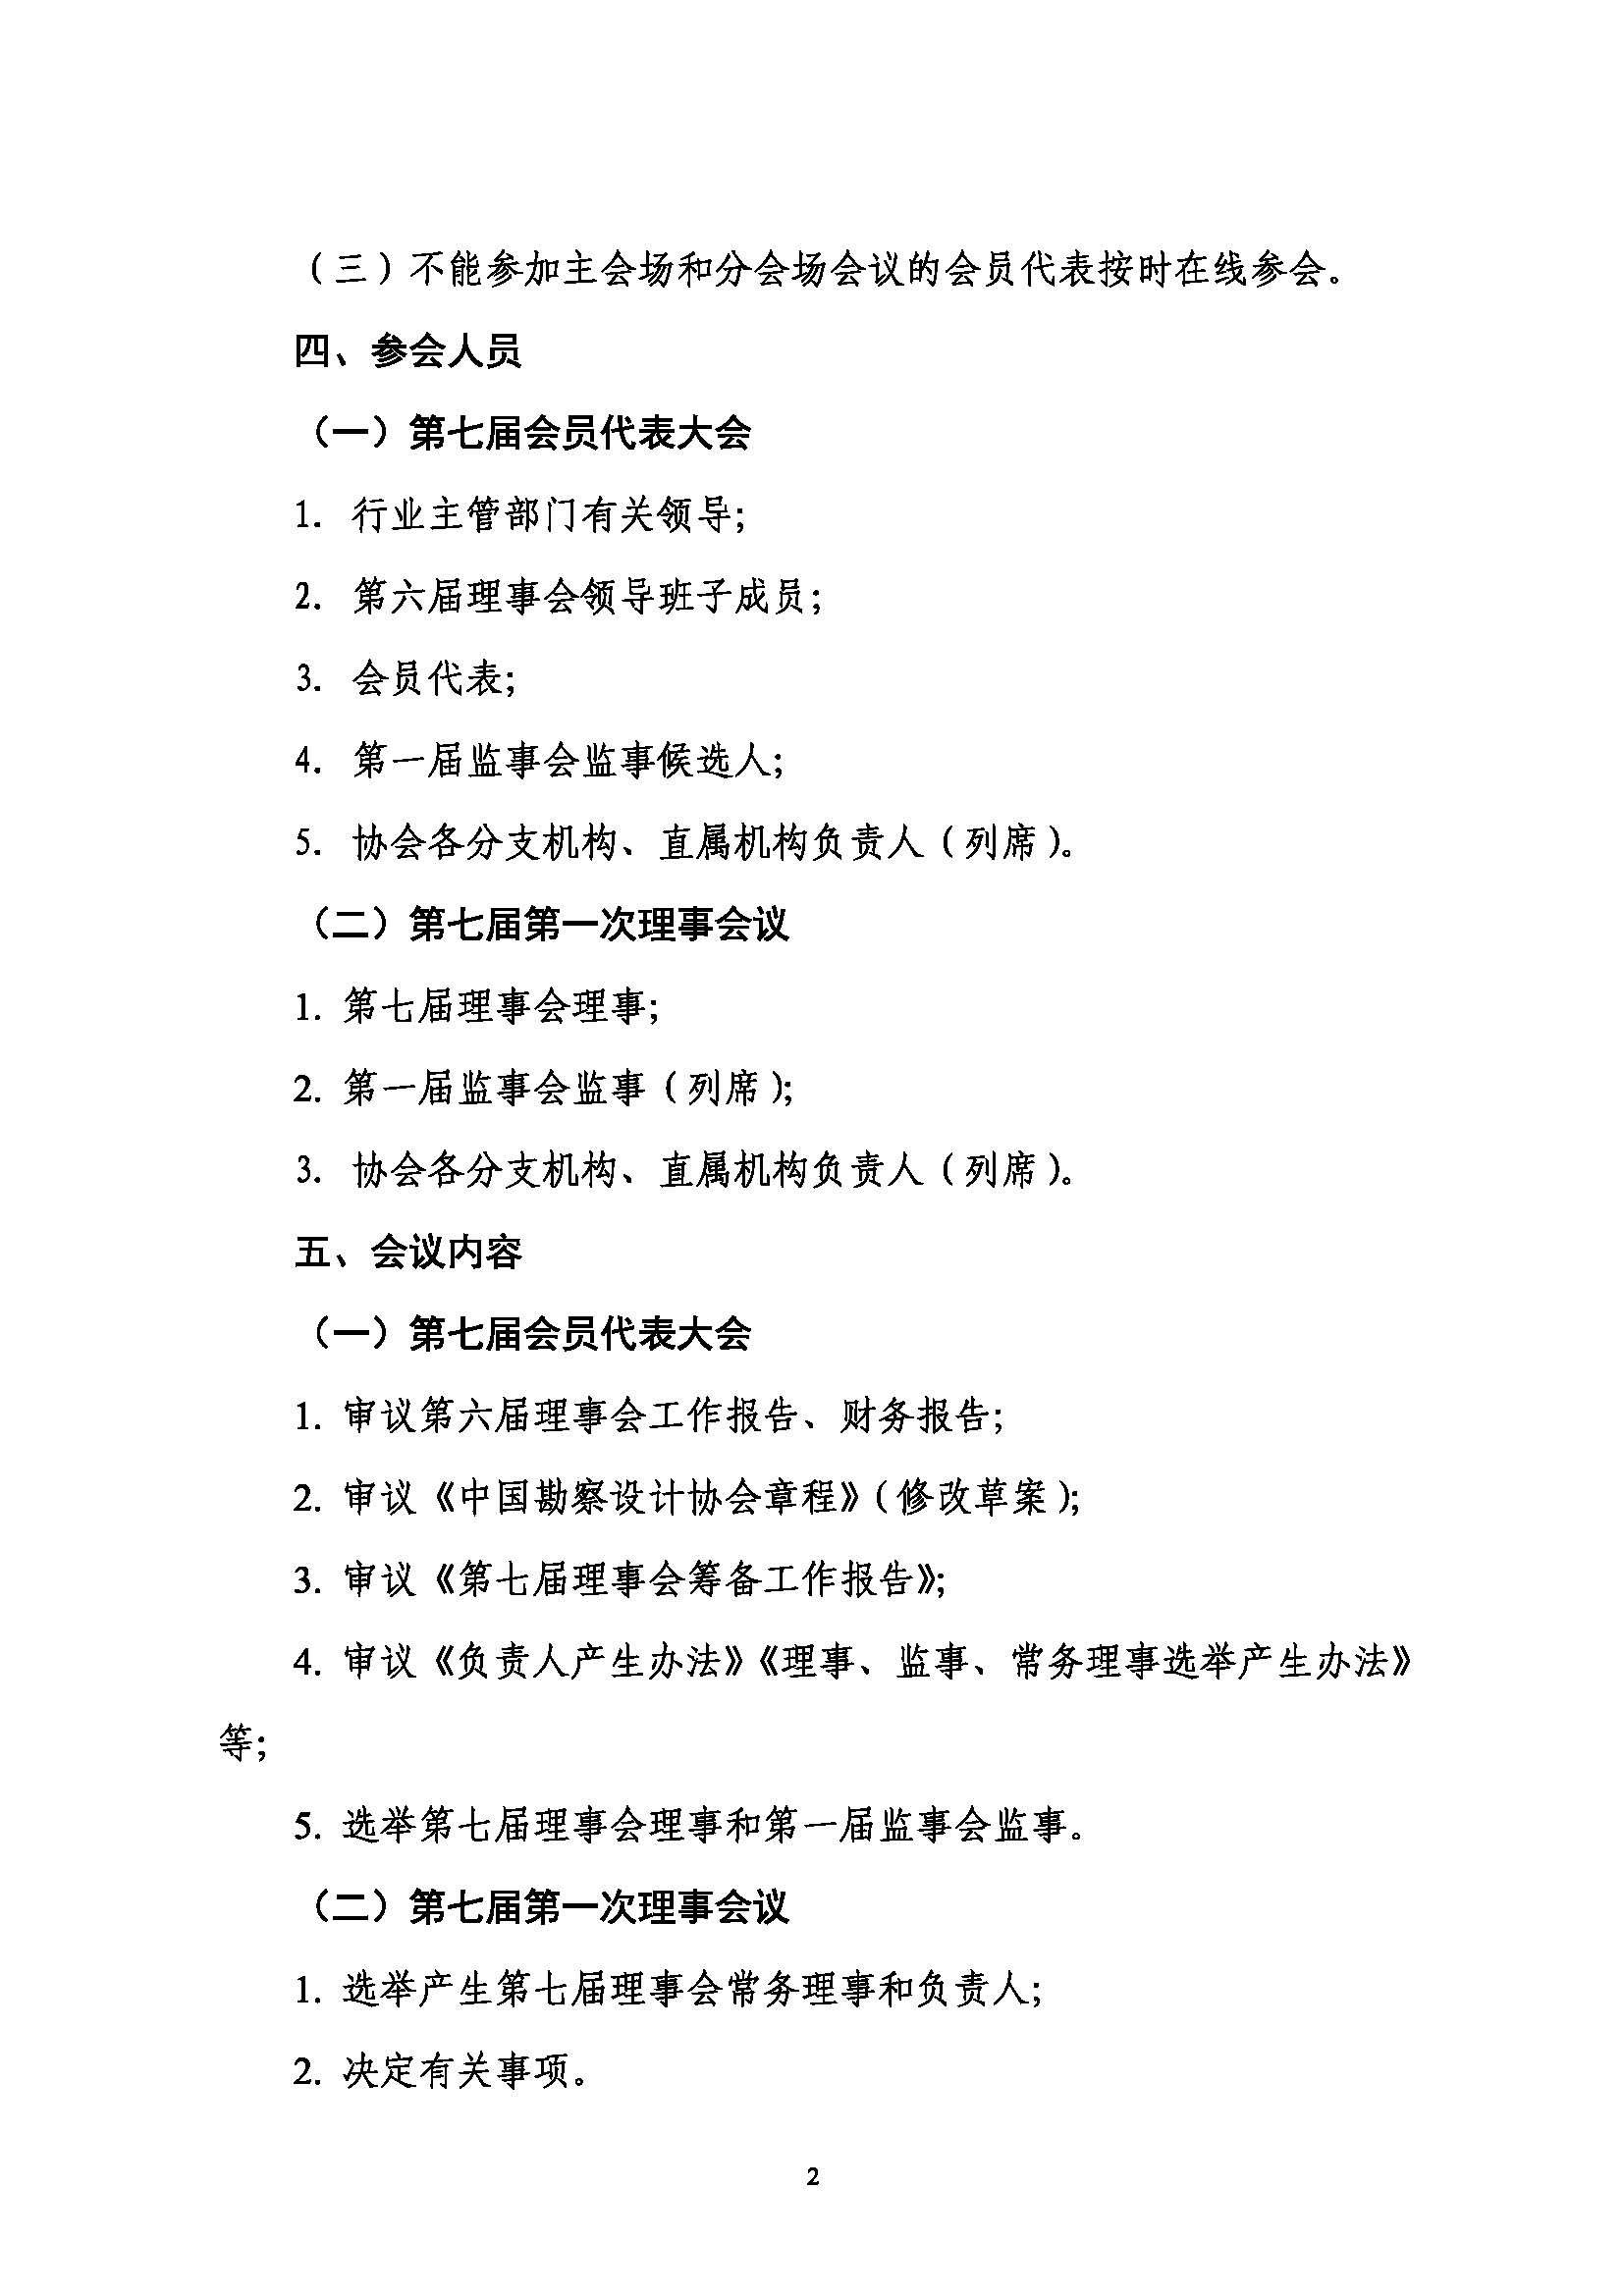 附件：关于召开中国勘察设计协会第七届会员代表大会暨第七届第一次理事会议的通知_页面_2.jpg